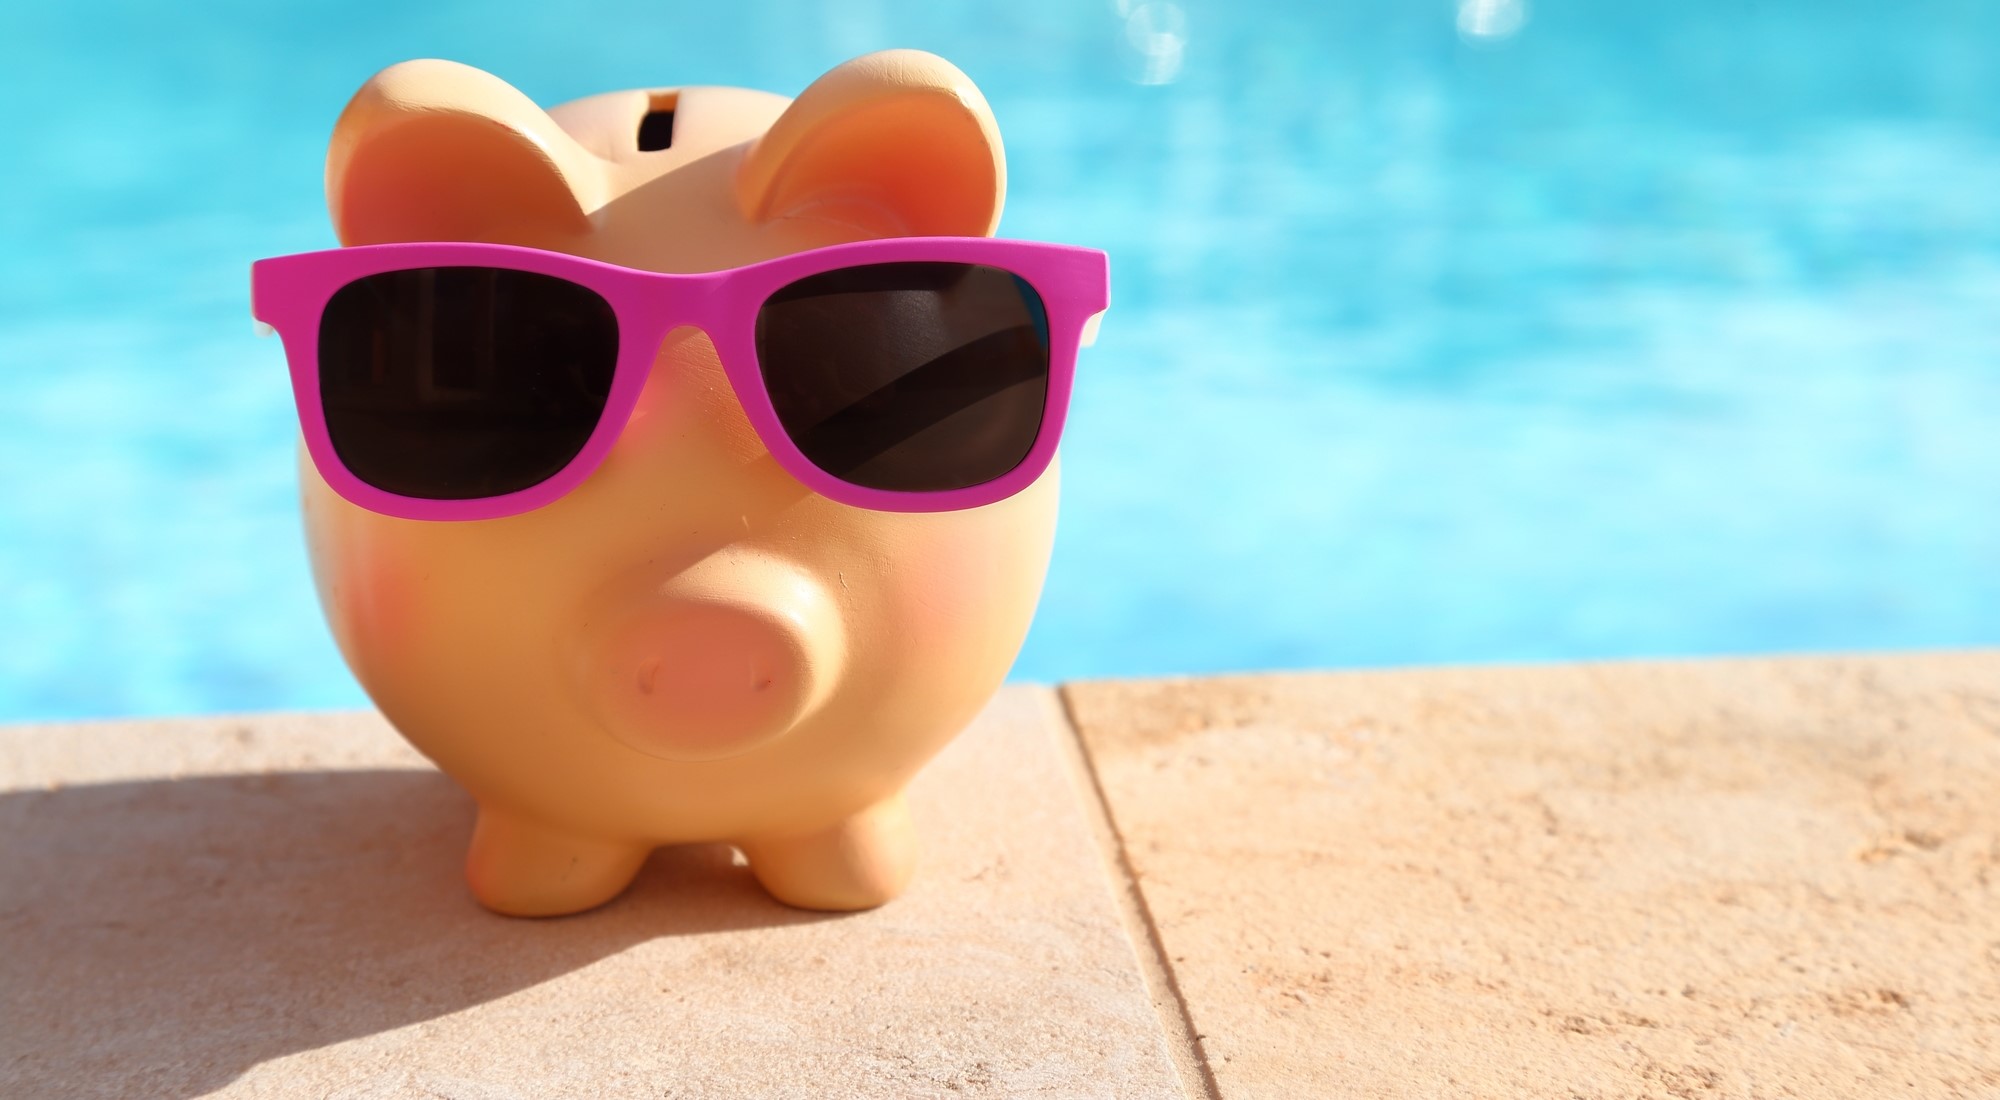 Oportunidade de negócios: deixe a piscina do seu cliente pronta para o verão!